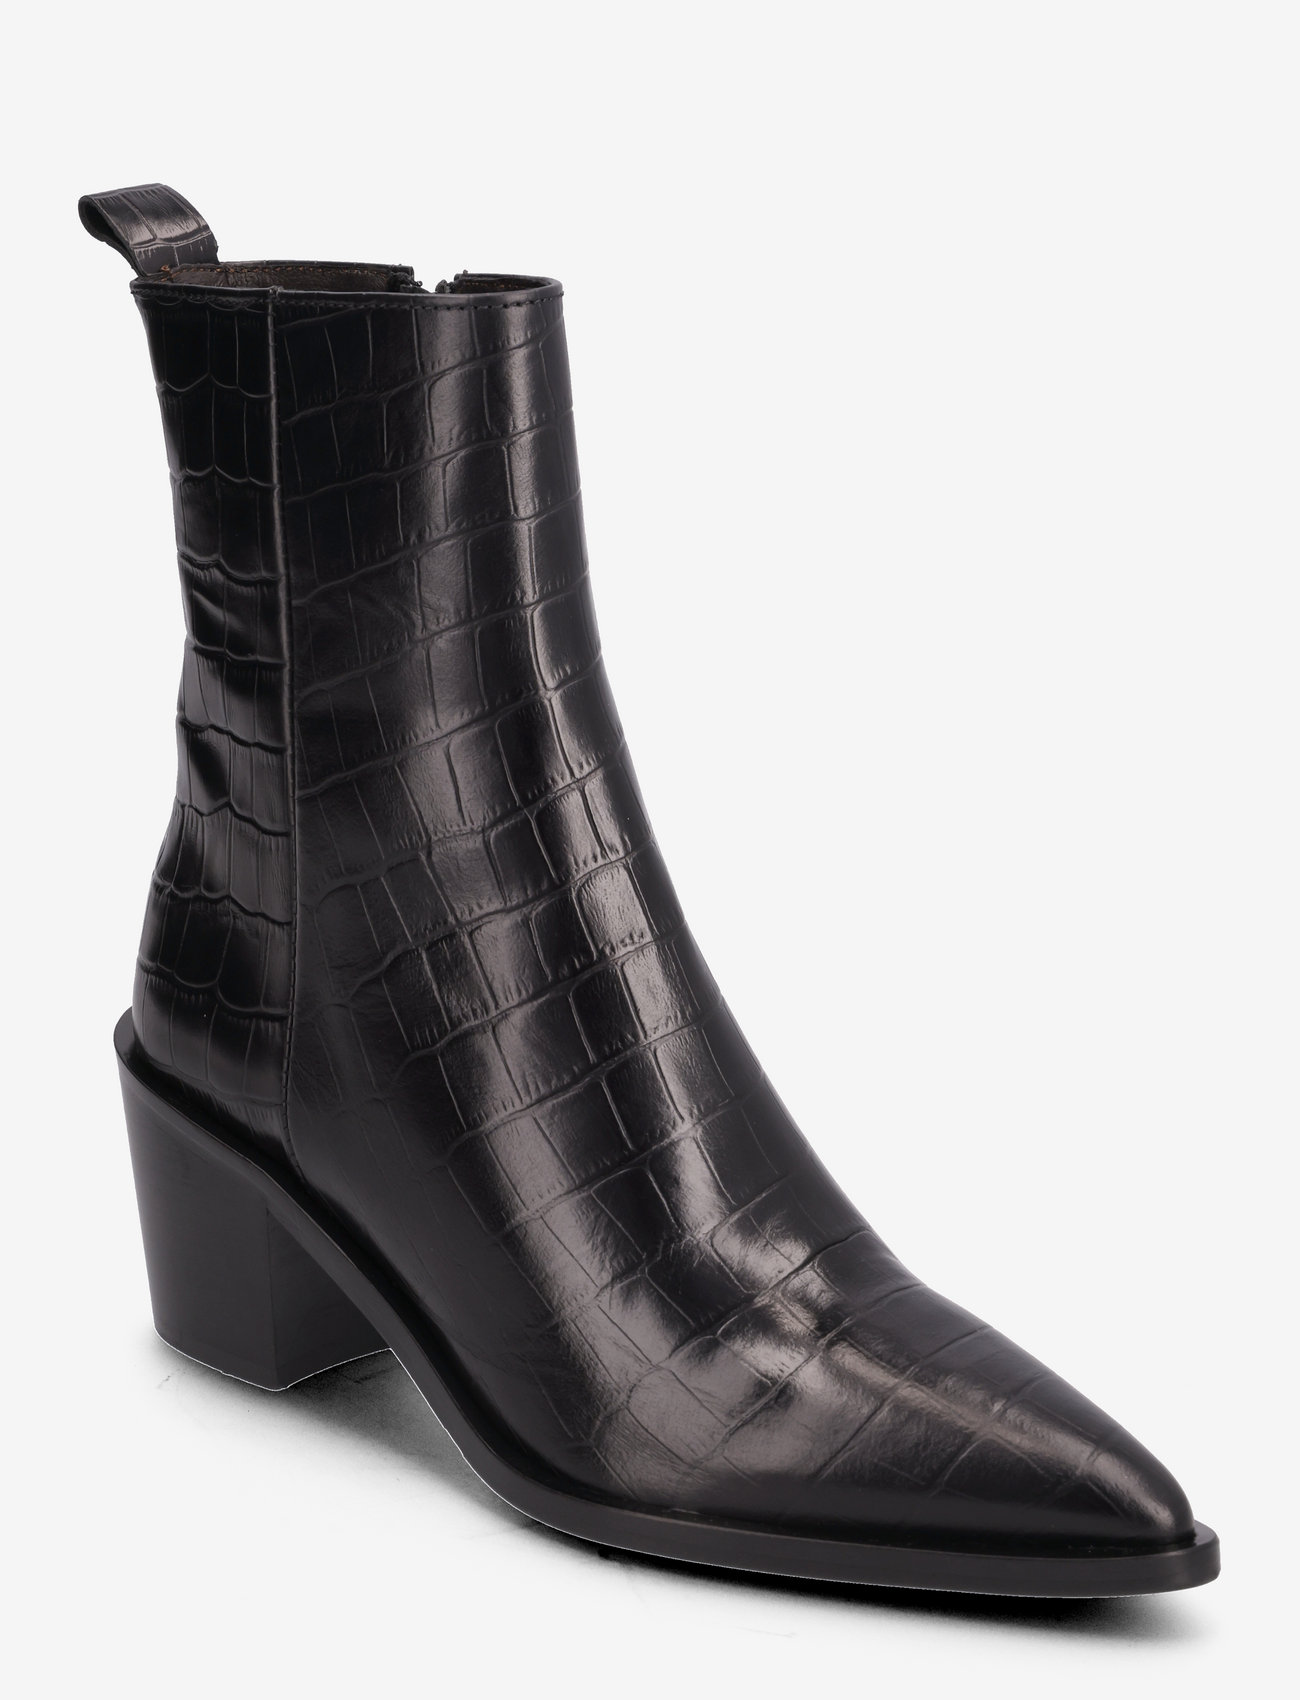 Billi Bi - Booties - high heel - black monterrey croco - 0